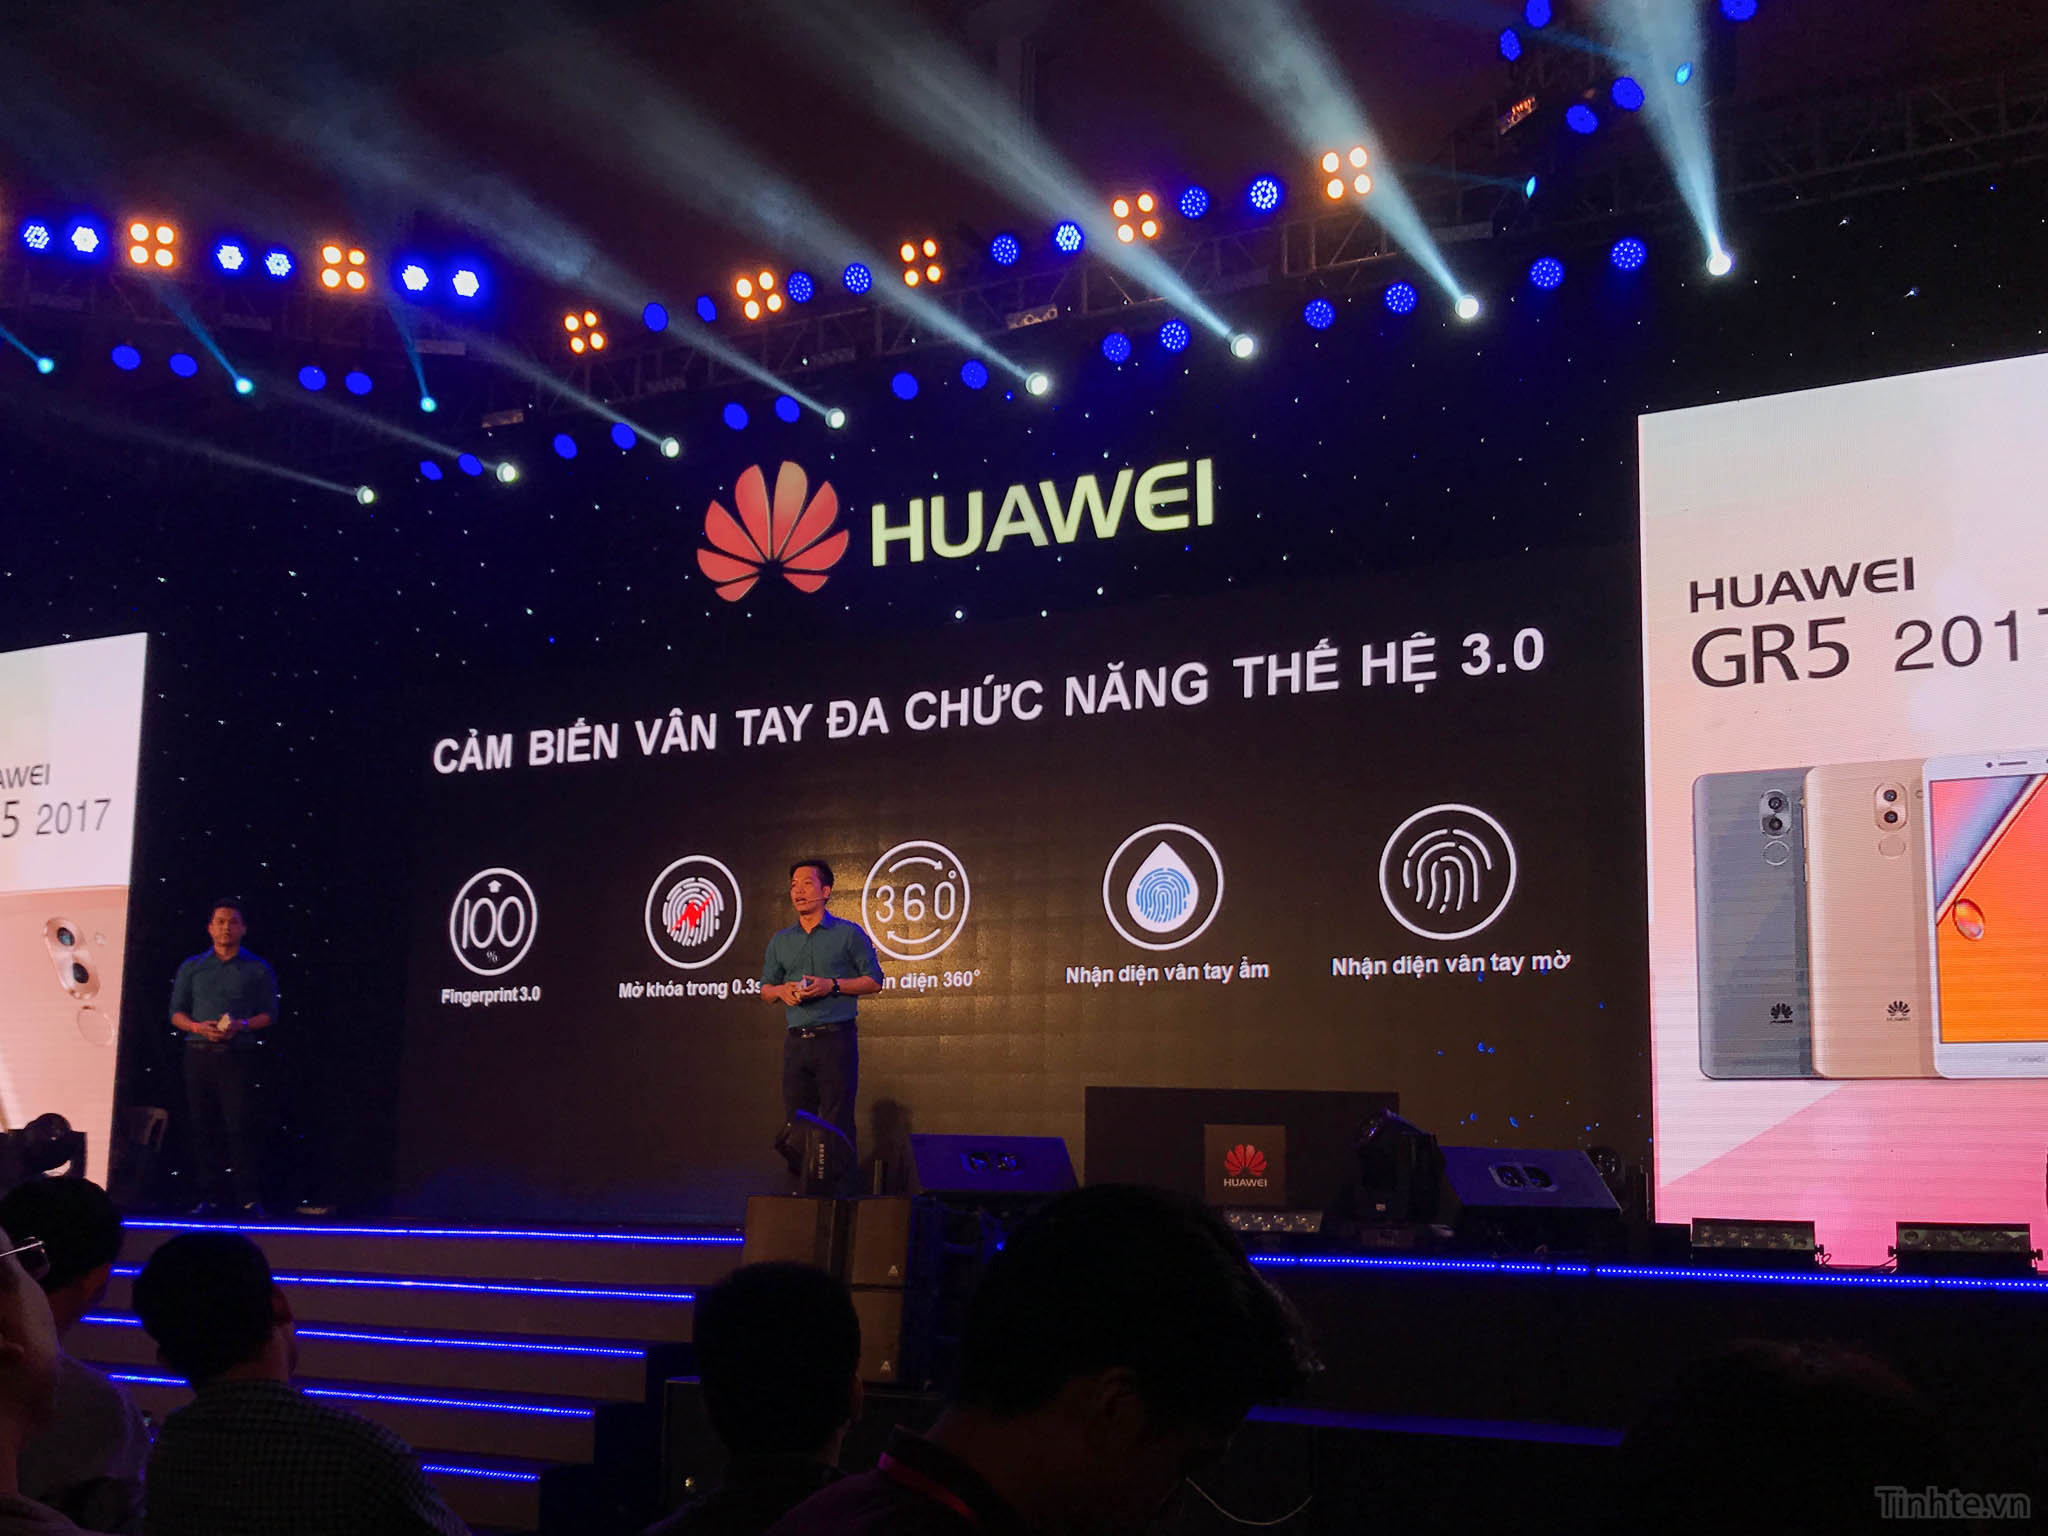 Huawei_GR5_2017_chinh_hang_tinhte.vn-9.jpg